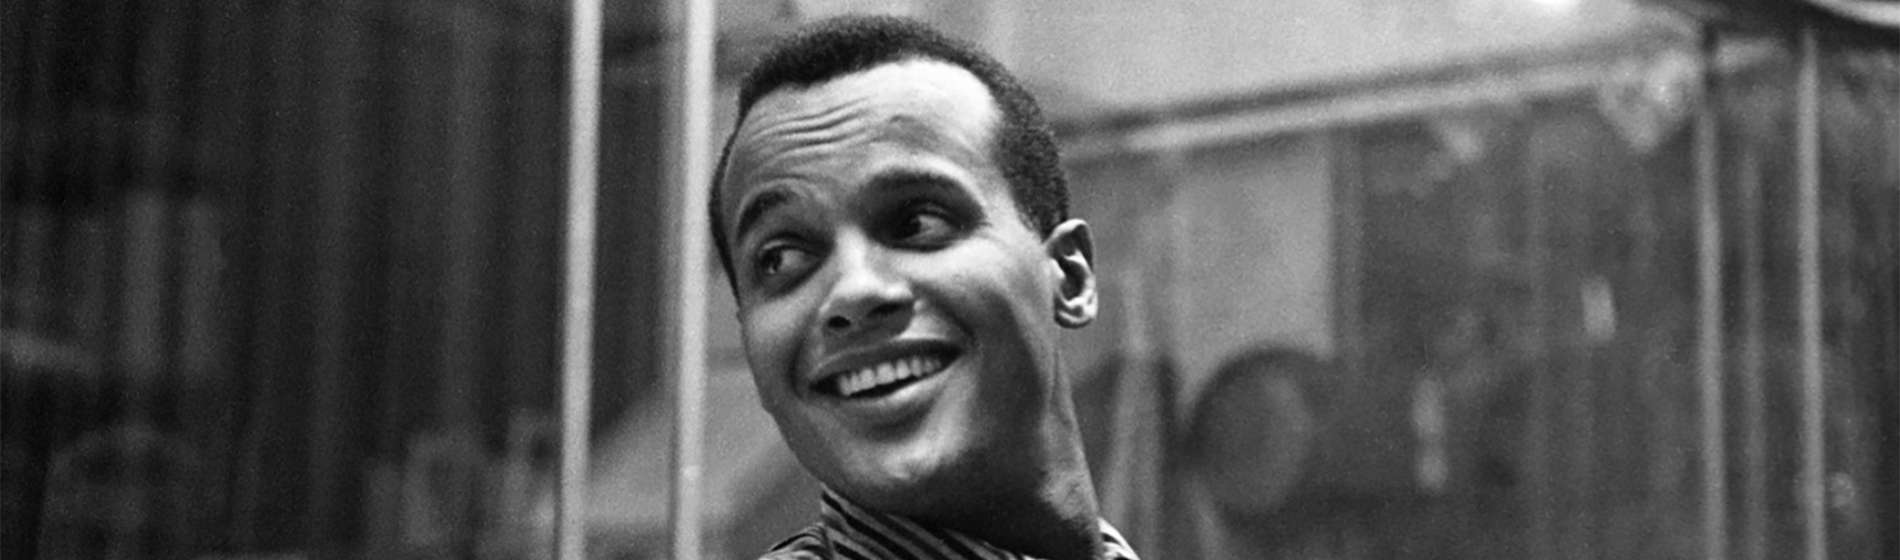 Harry Belafonte Career Retrospective Featured